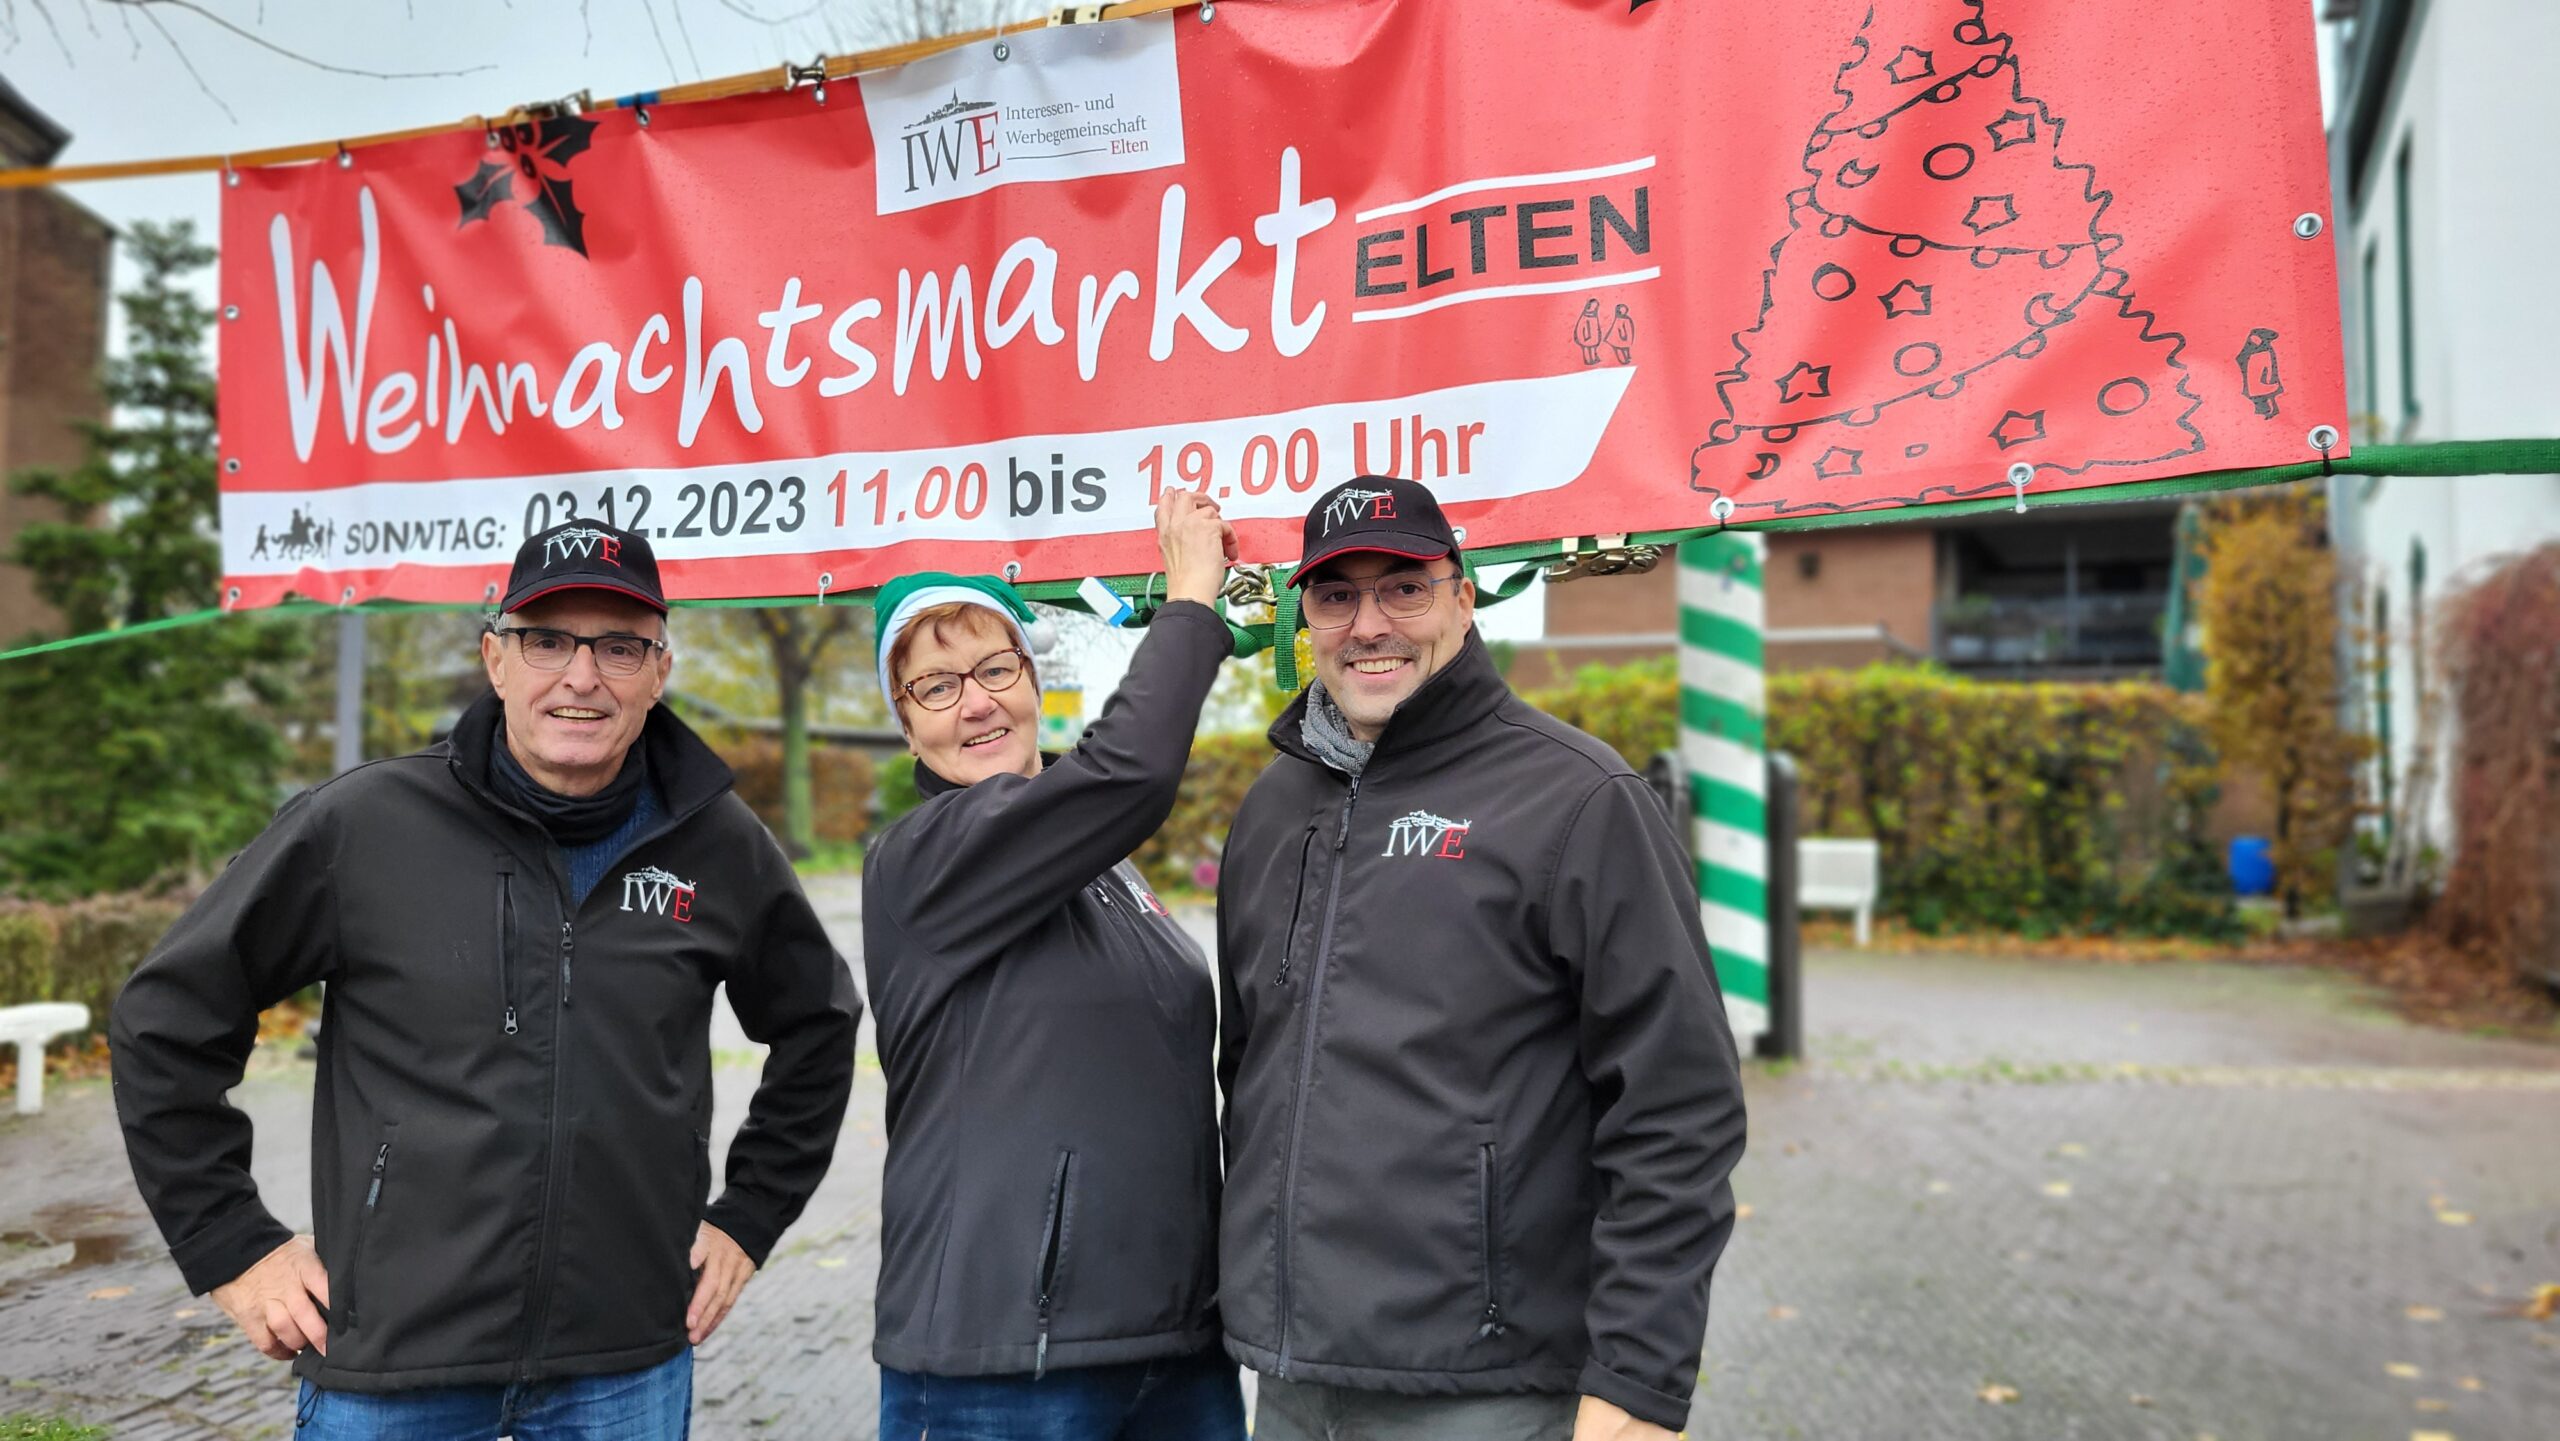 Die Organisatoren des Weihnachtsmarktes der IWE in Elten.